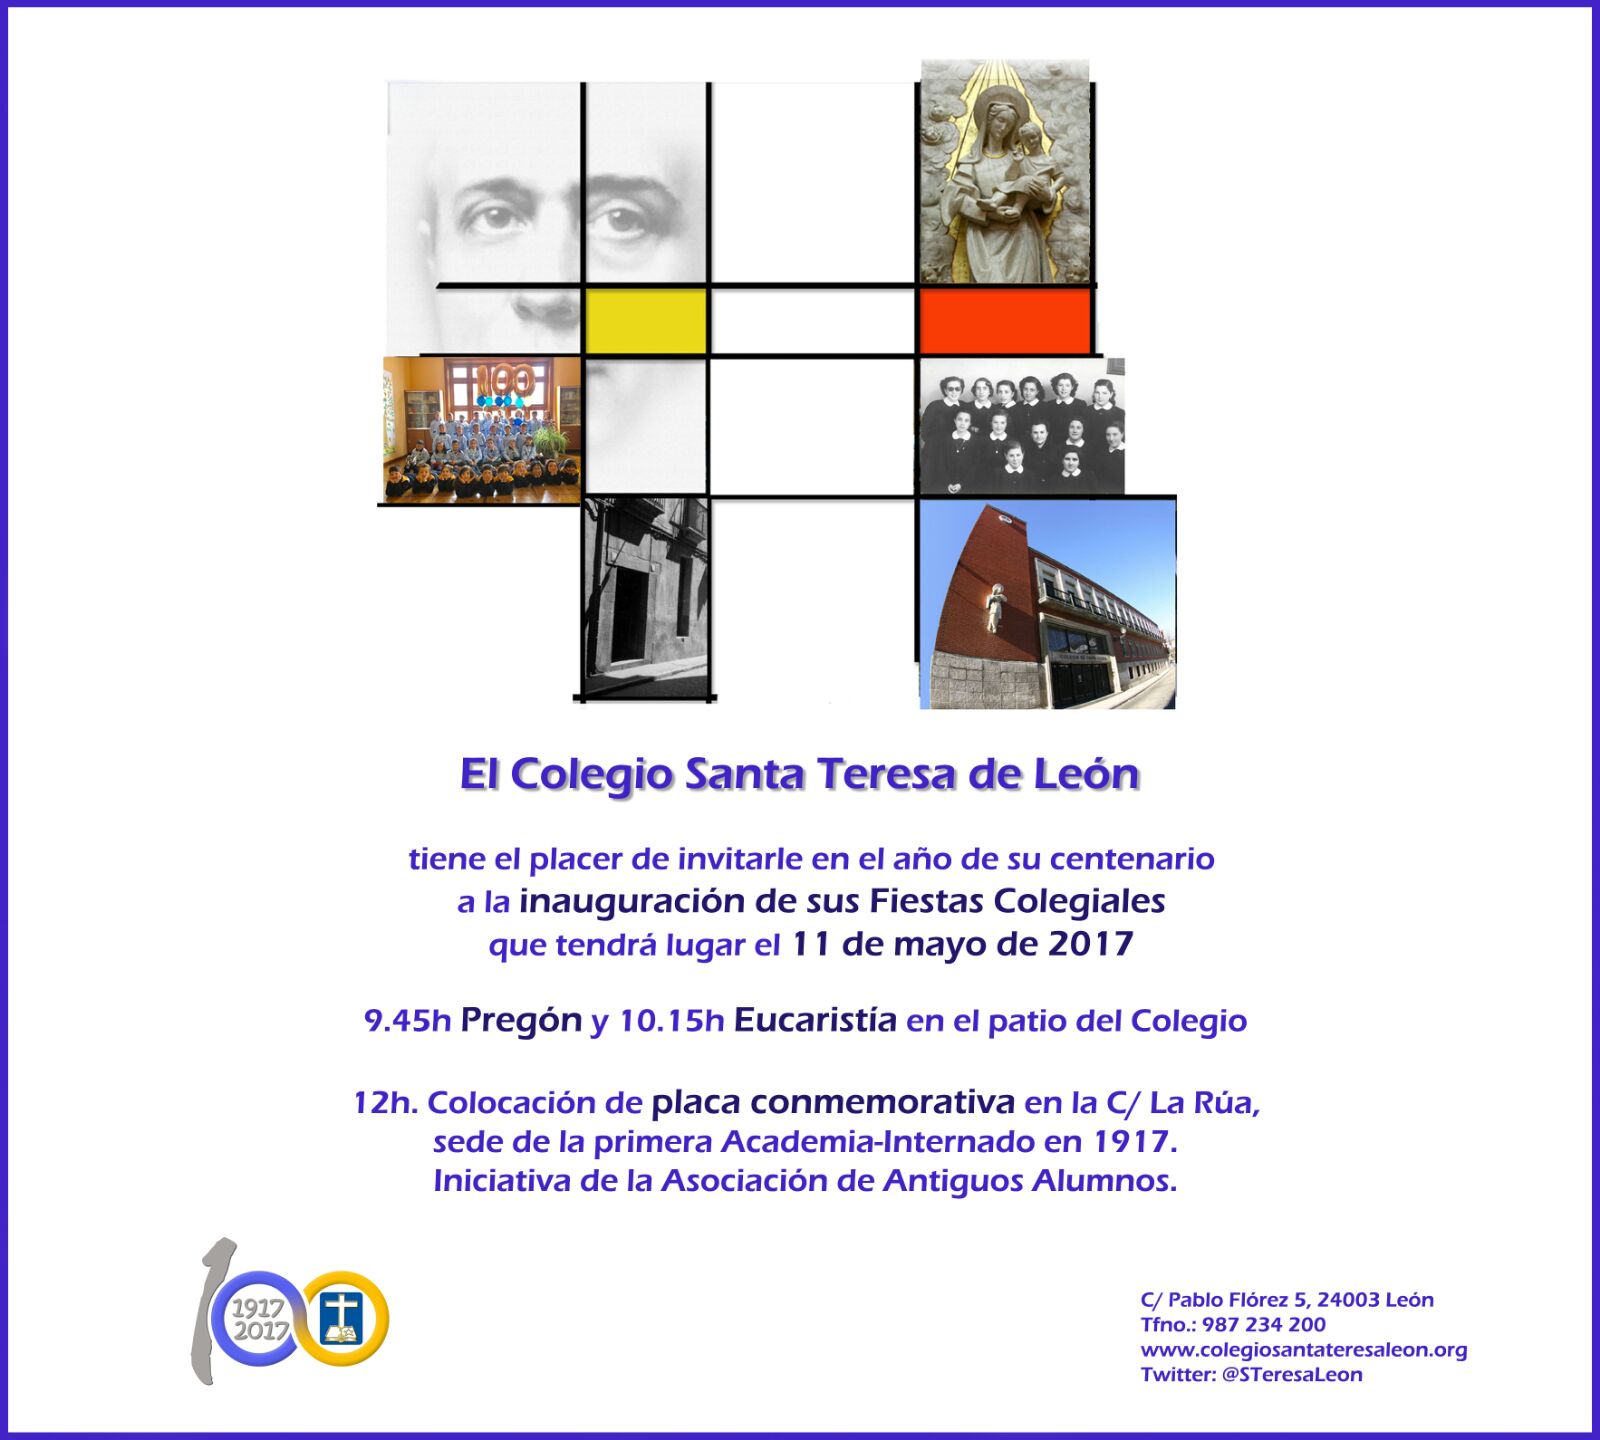 Centenario IT en León: Fiestas y Placa conmemorativa